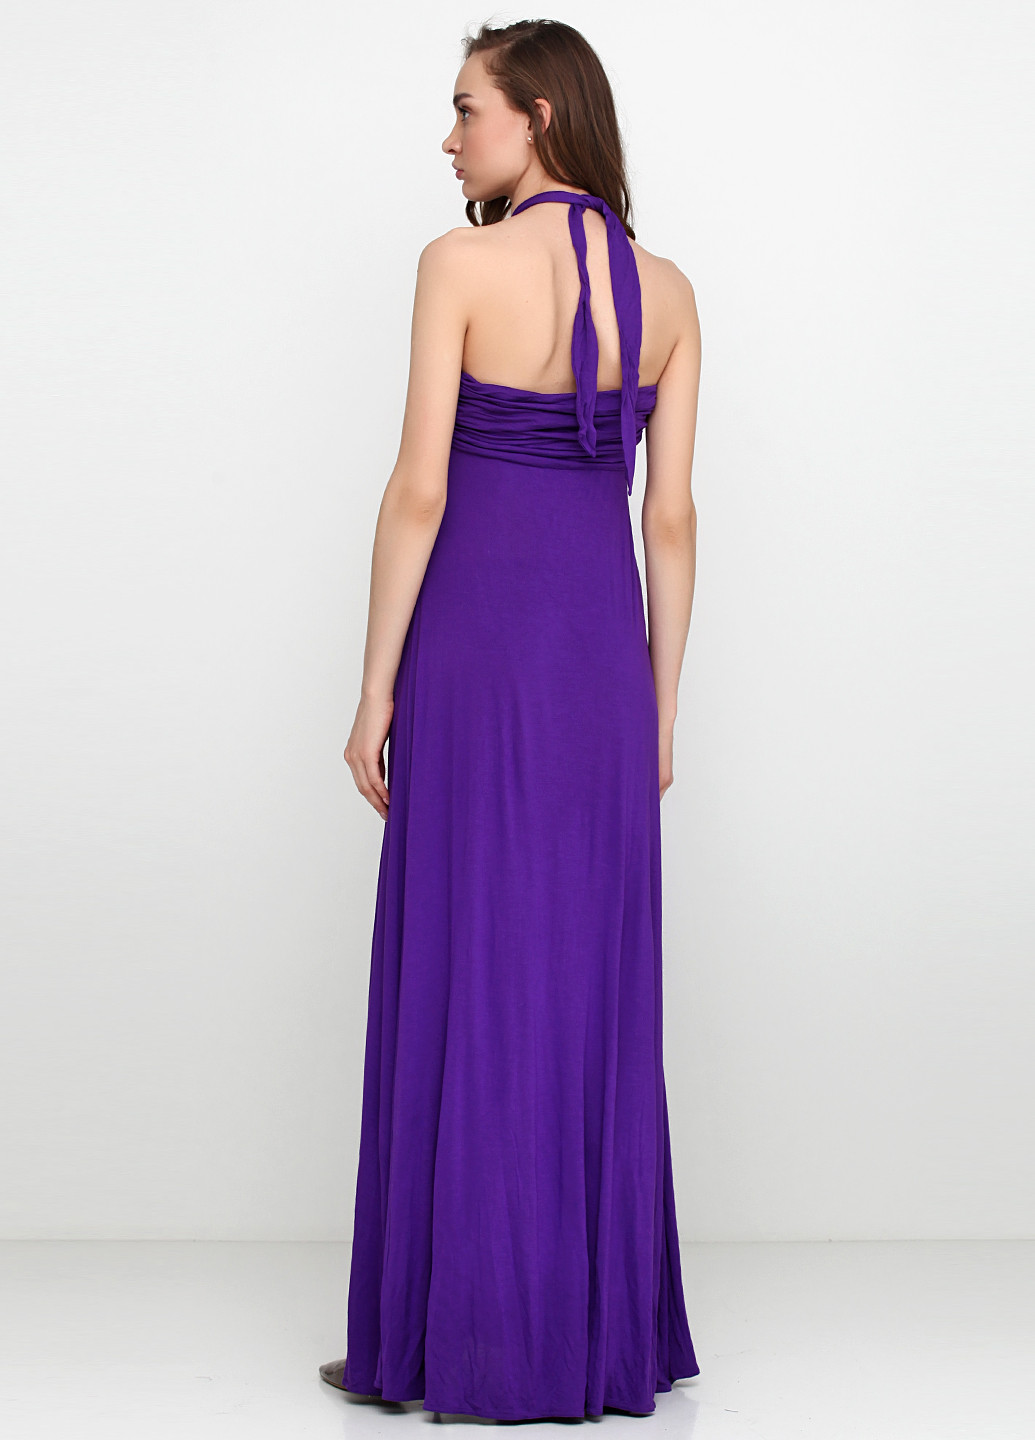 Фіолетова коктейльна сукня, сукня Ralph Lauren однотонна